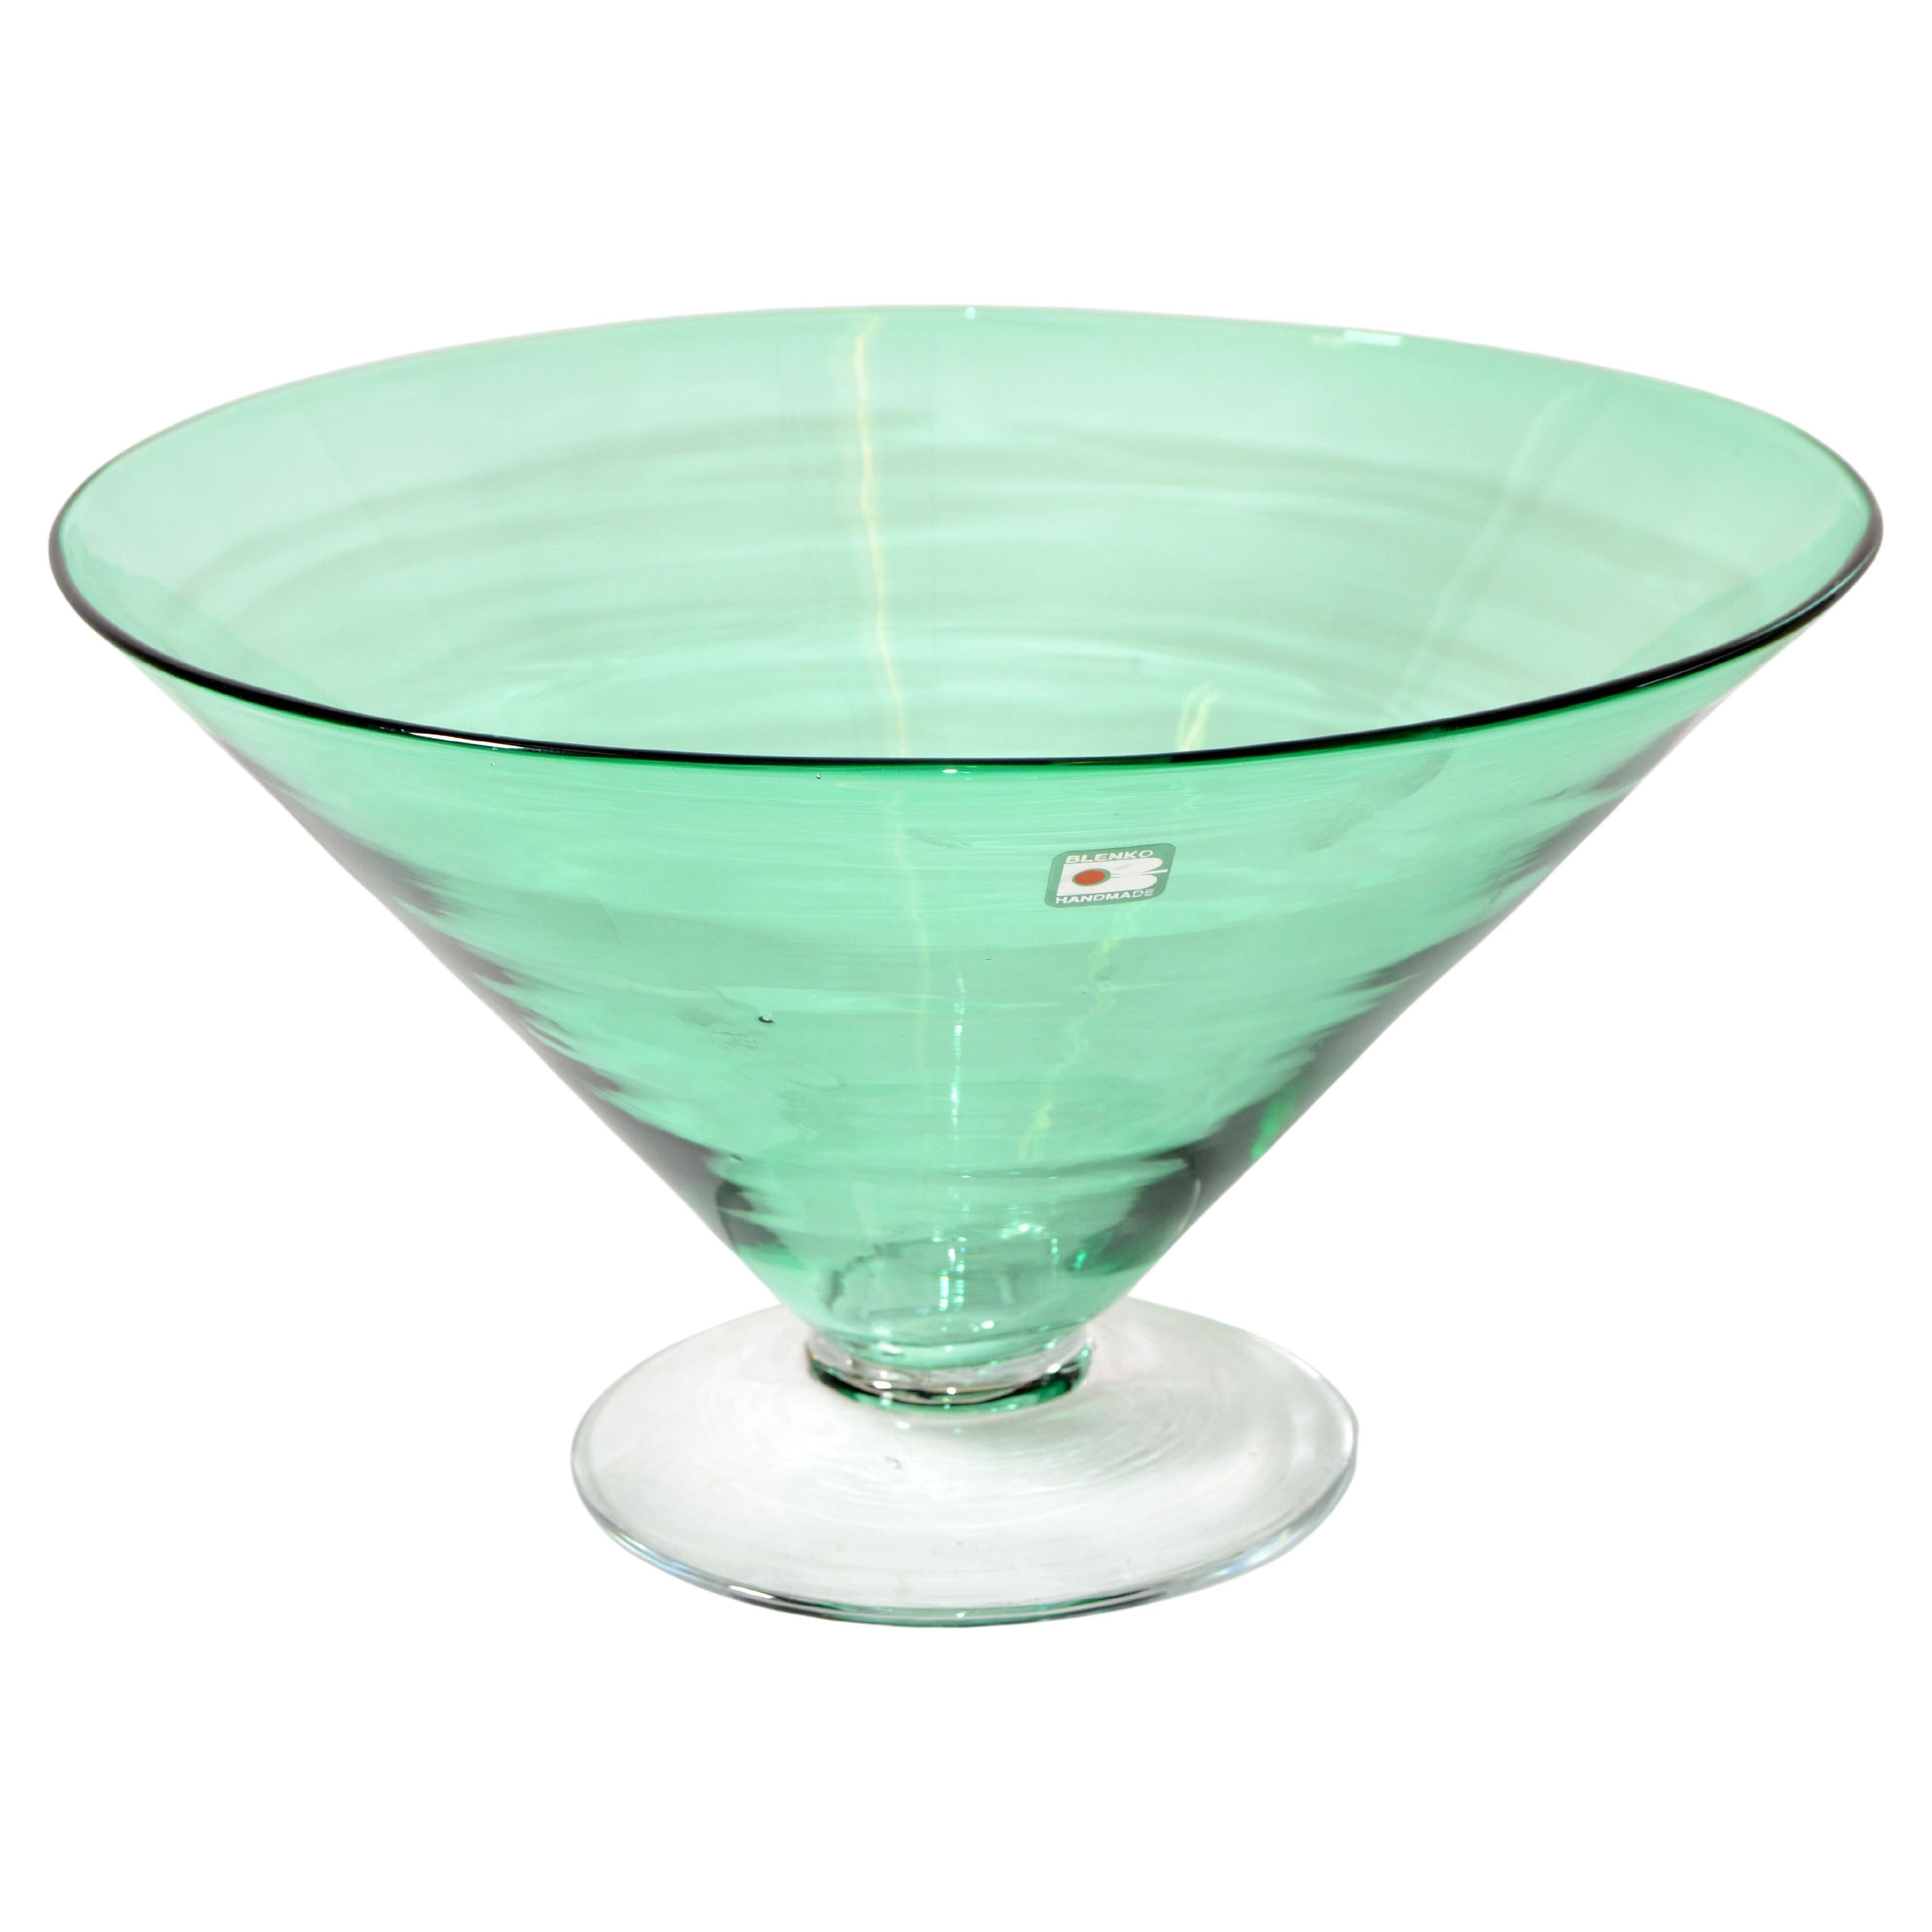 Original Blenko Mid-Century Modern Mint Green Art Glass Bowl, Centerpiece 1980